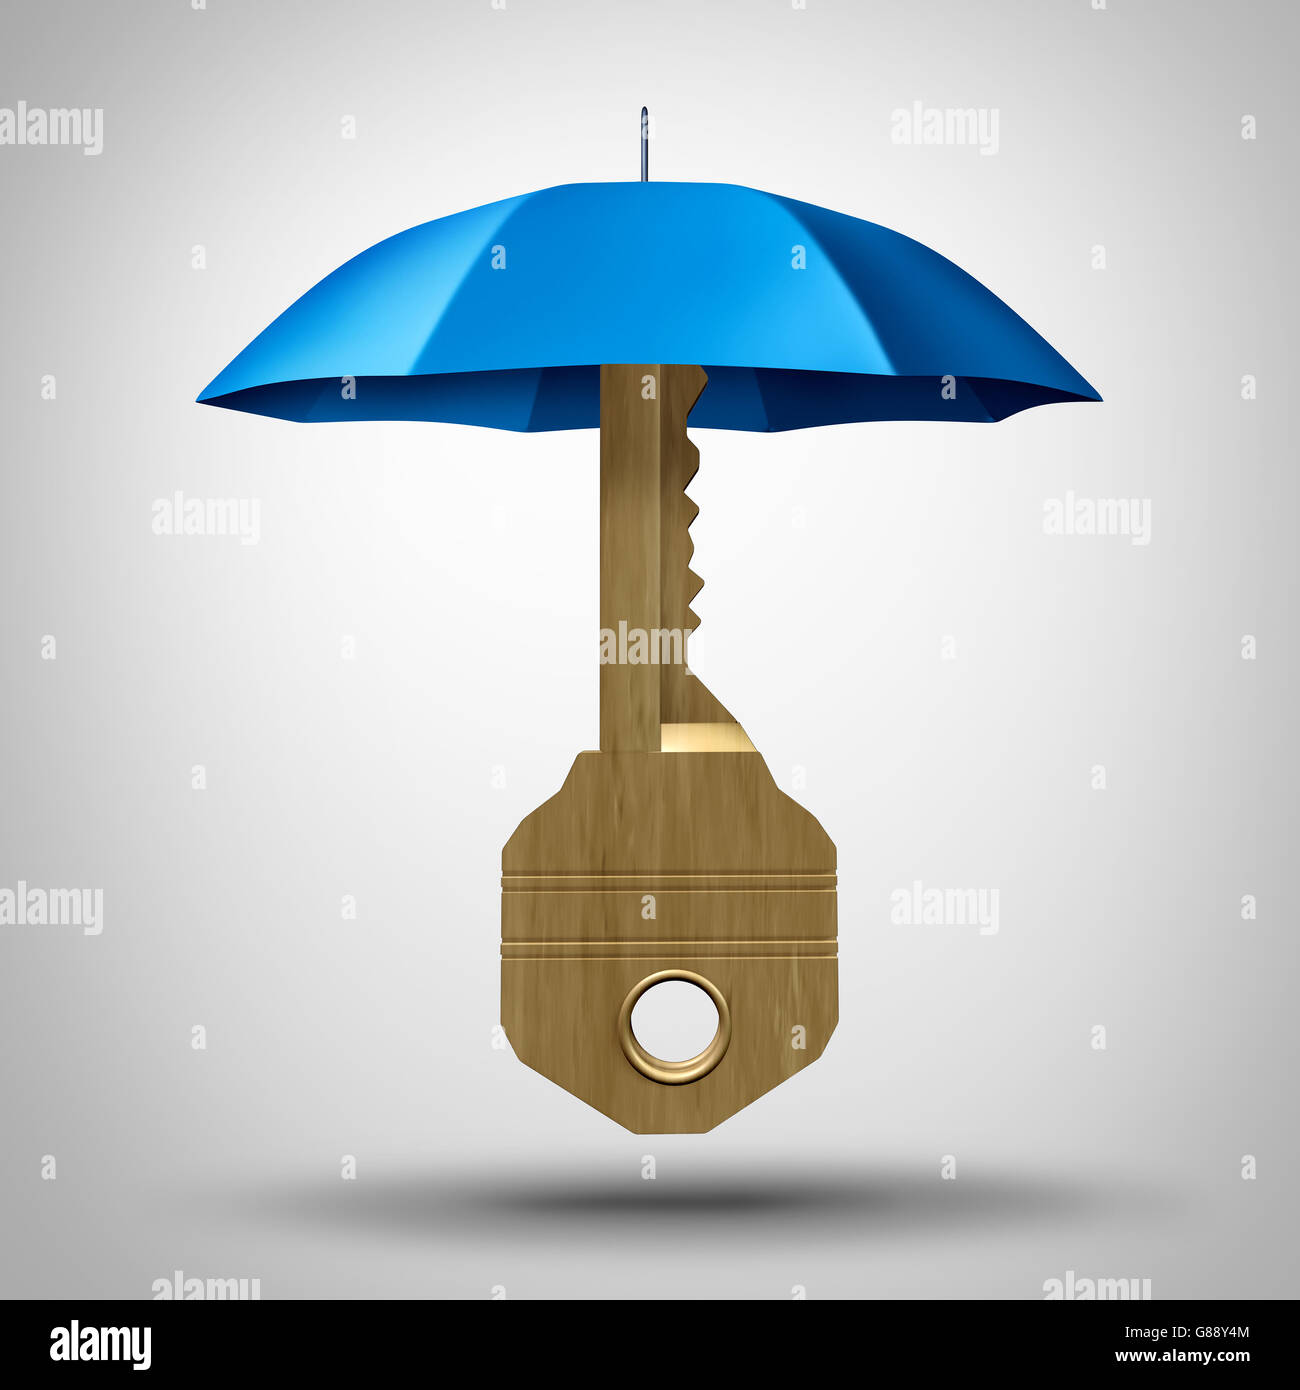 Schlüsselsicherheit Konzept mit einem Regenschirm schützt das Symbol der Lösungen als Symbol für die Verteidigung gegen die unternehmerische Strategie Risiko als eine 3D Darstellung. Stockfoto